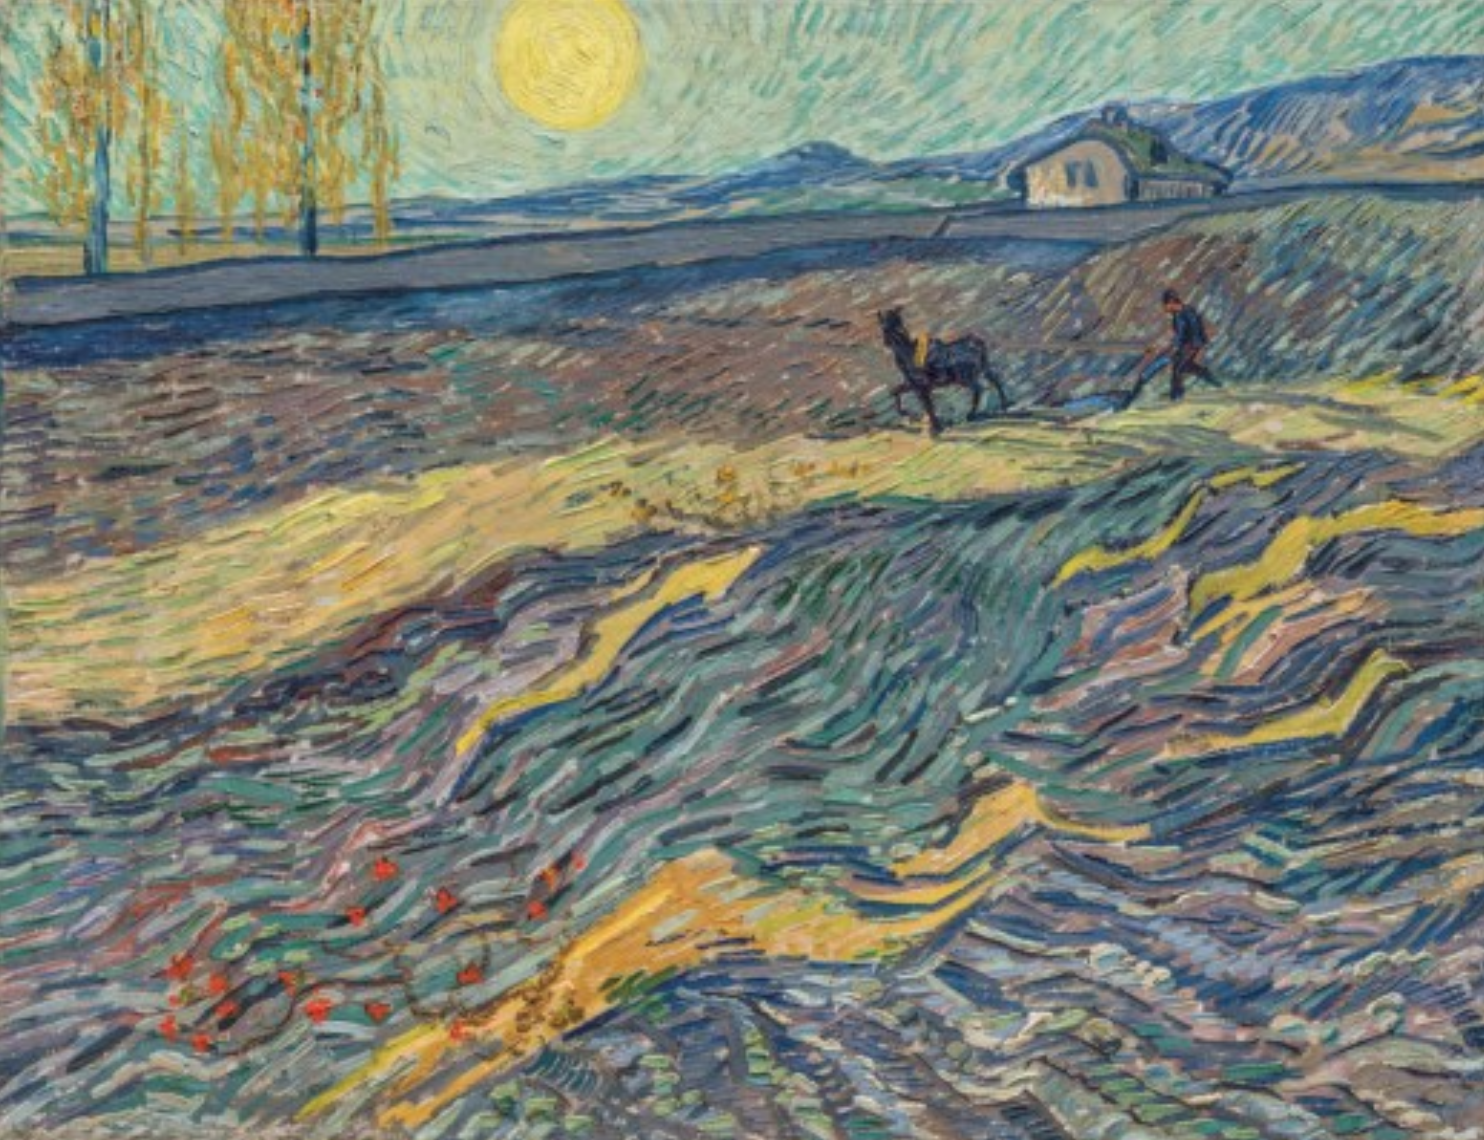 Vincent van Gogh painting Laboureur dans un Champ, c. 1889.